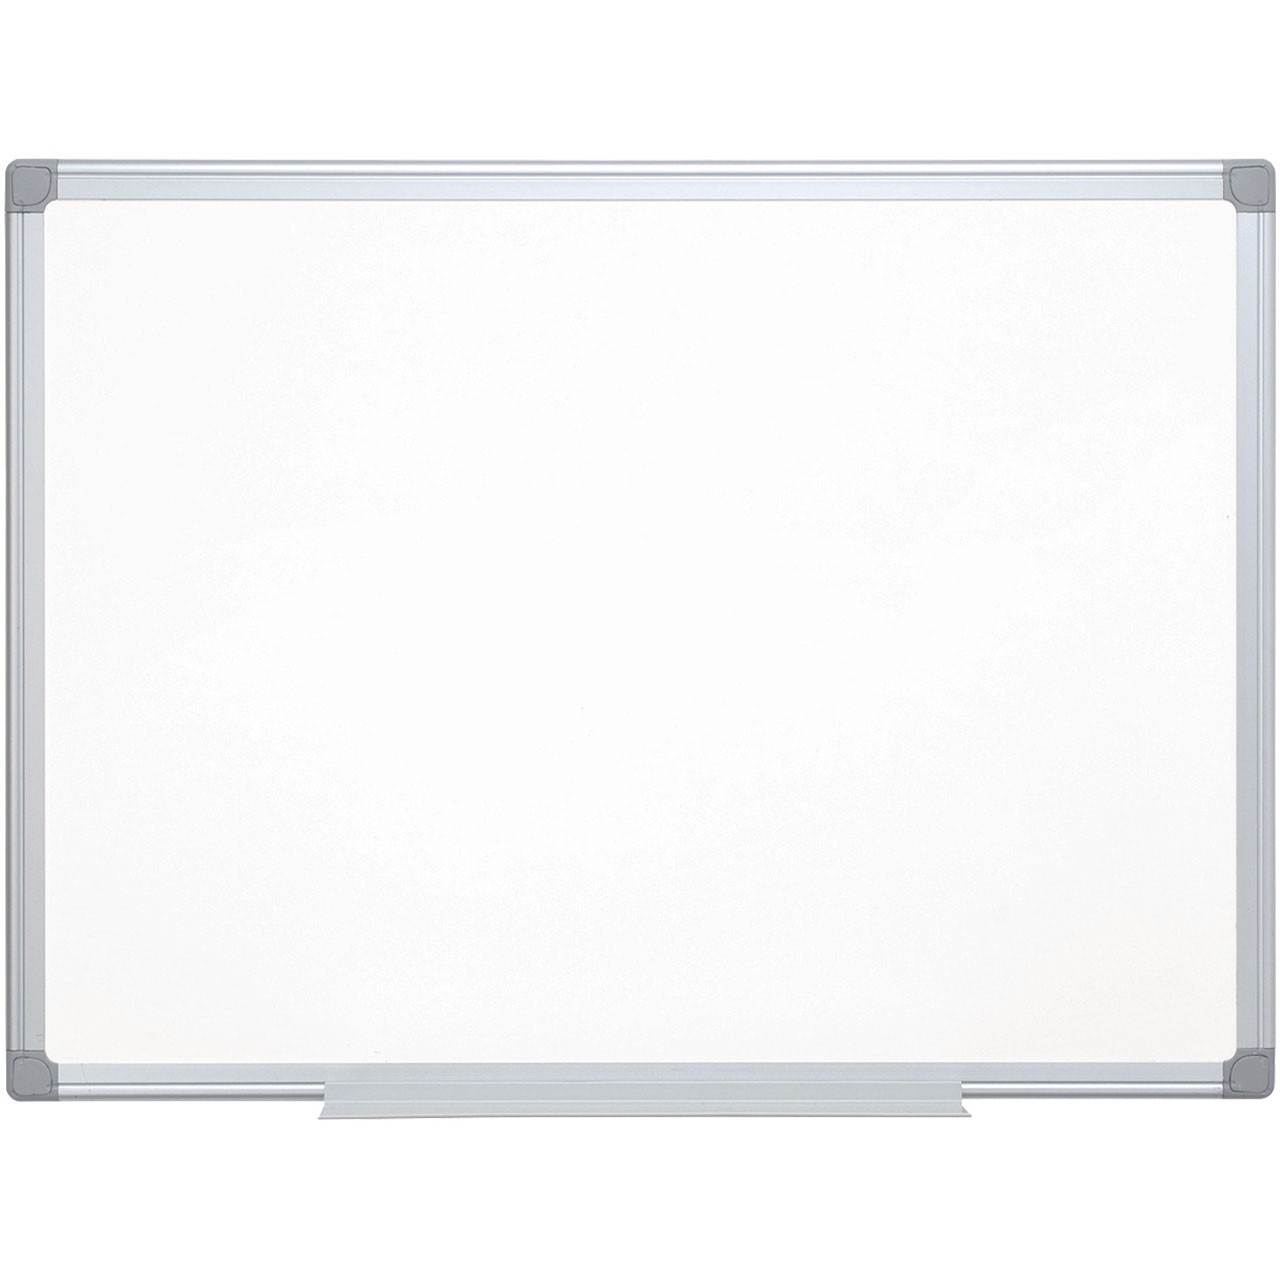 Q-connect lakeret whiteboardtavle 60x45cm